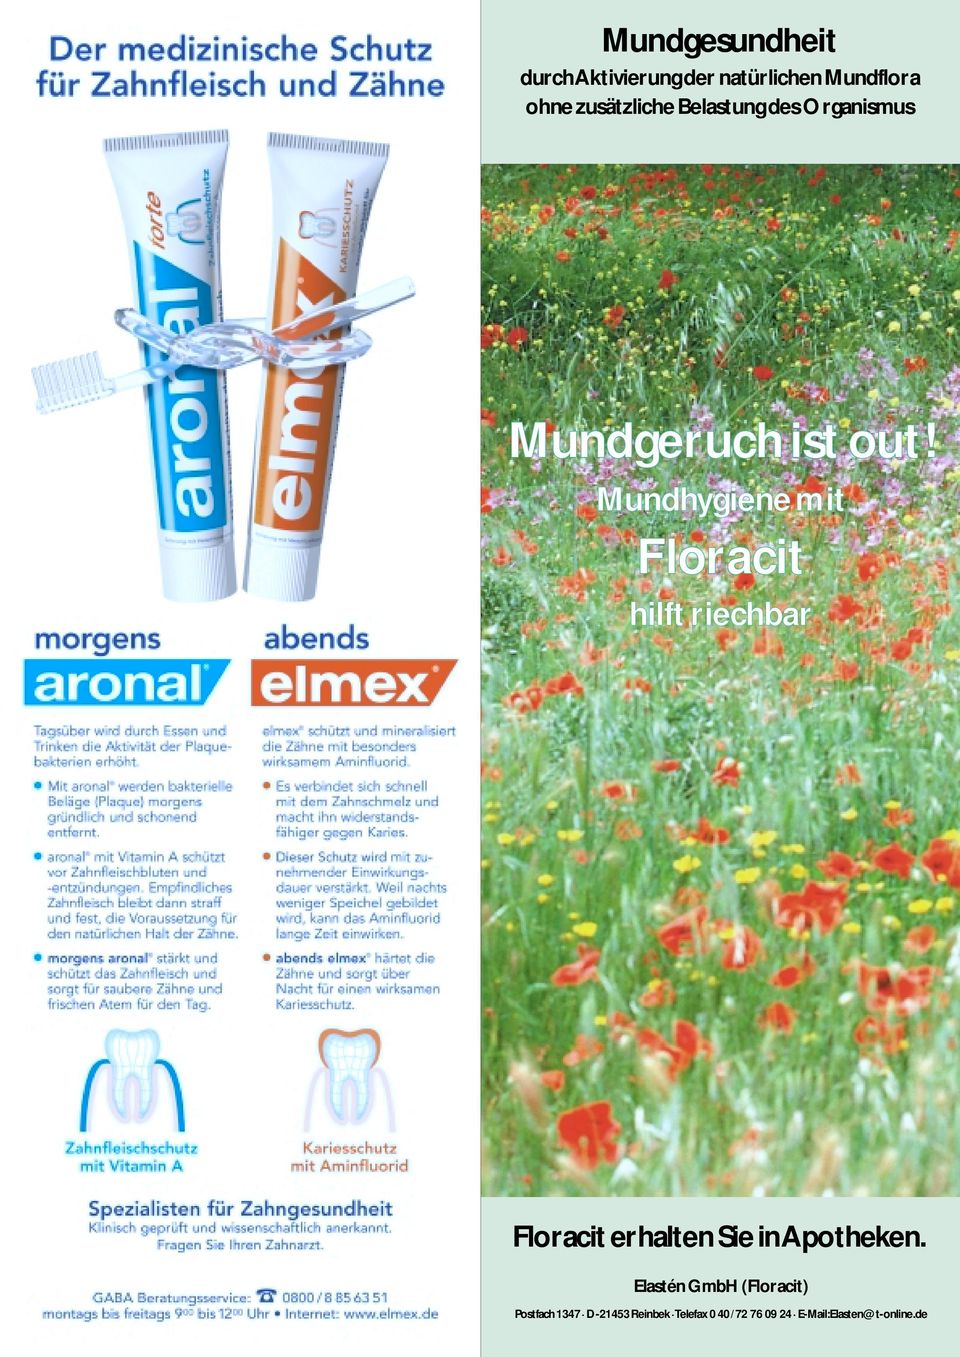 Mundhygiene mit Floracit hilft riechbar Floracit erhalten Sie in Apotheken.